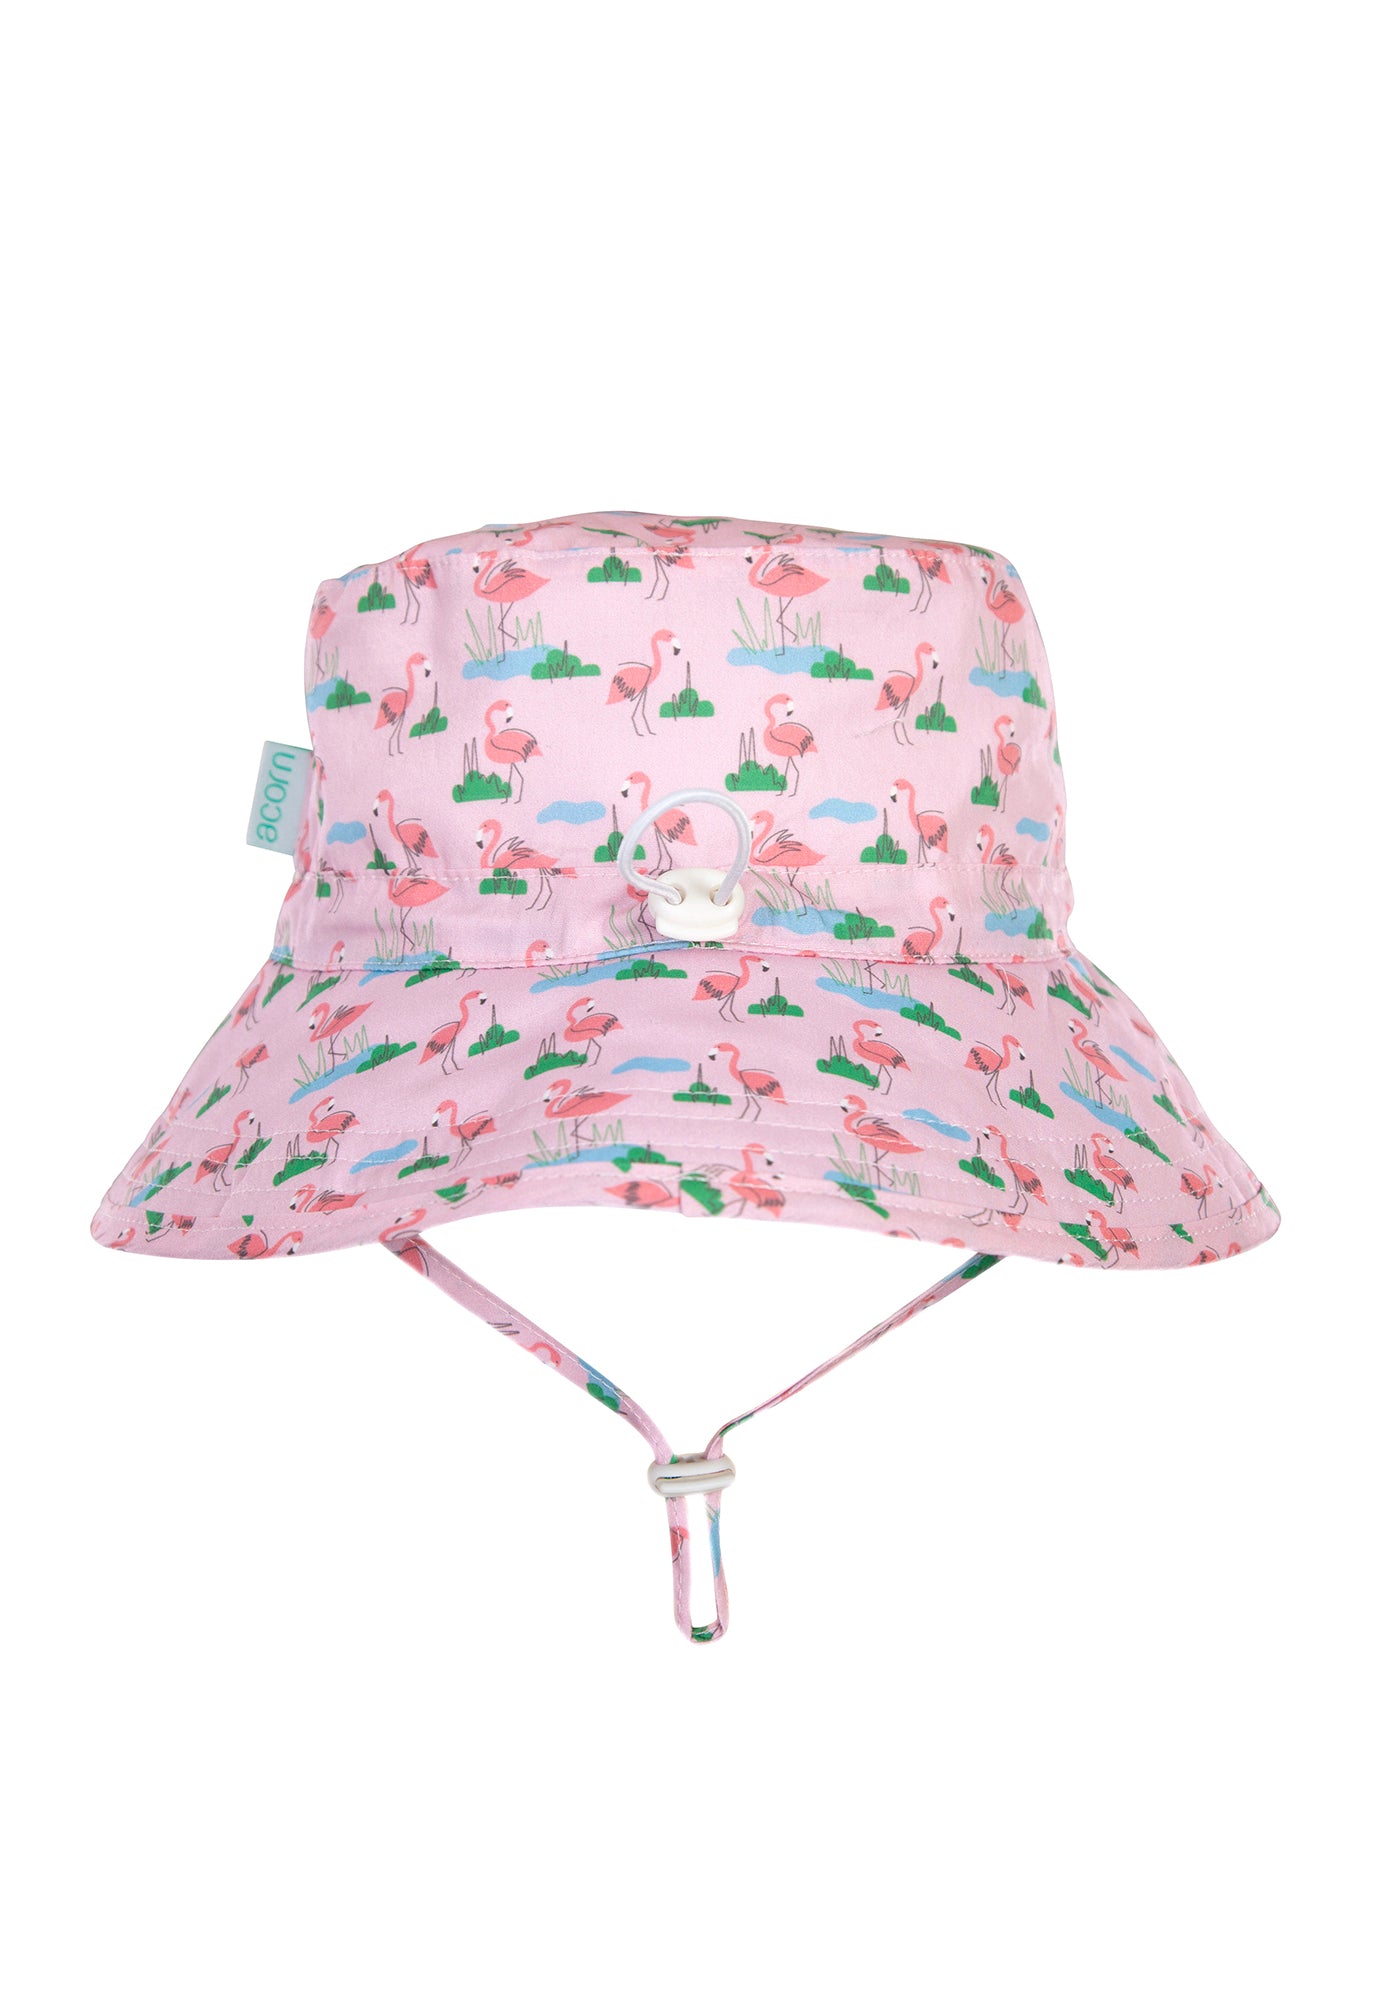 acorn kids - dancing flamingo bucket hat